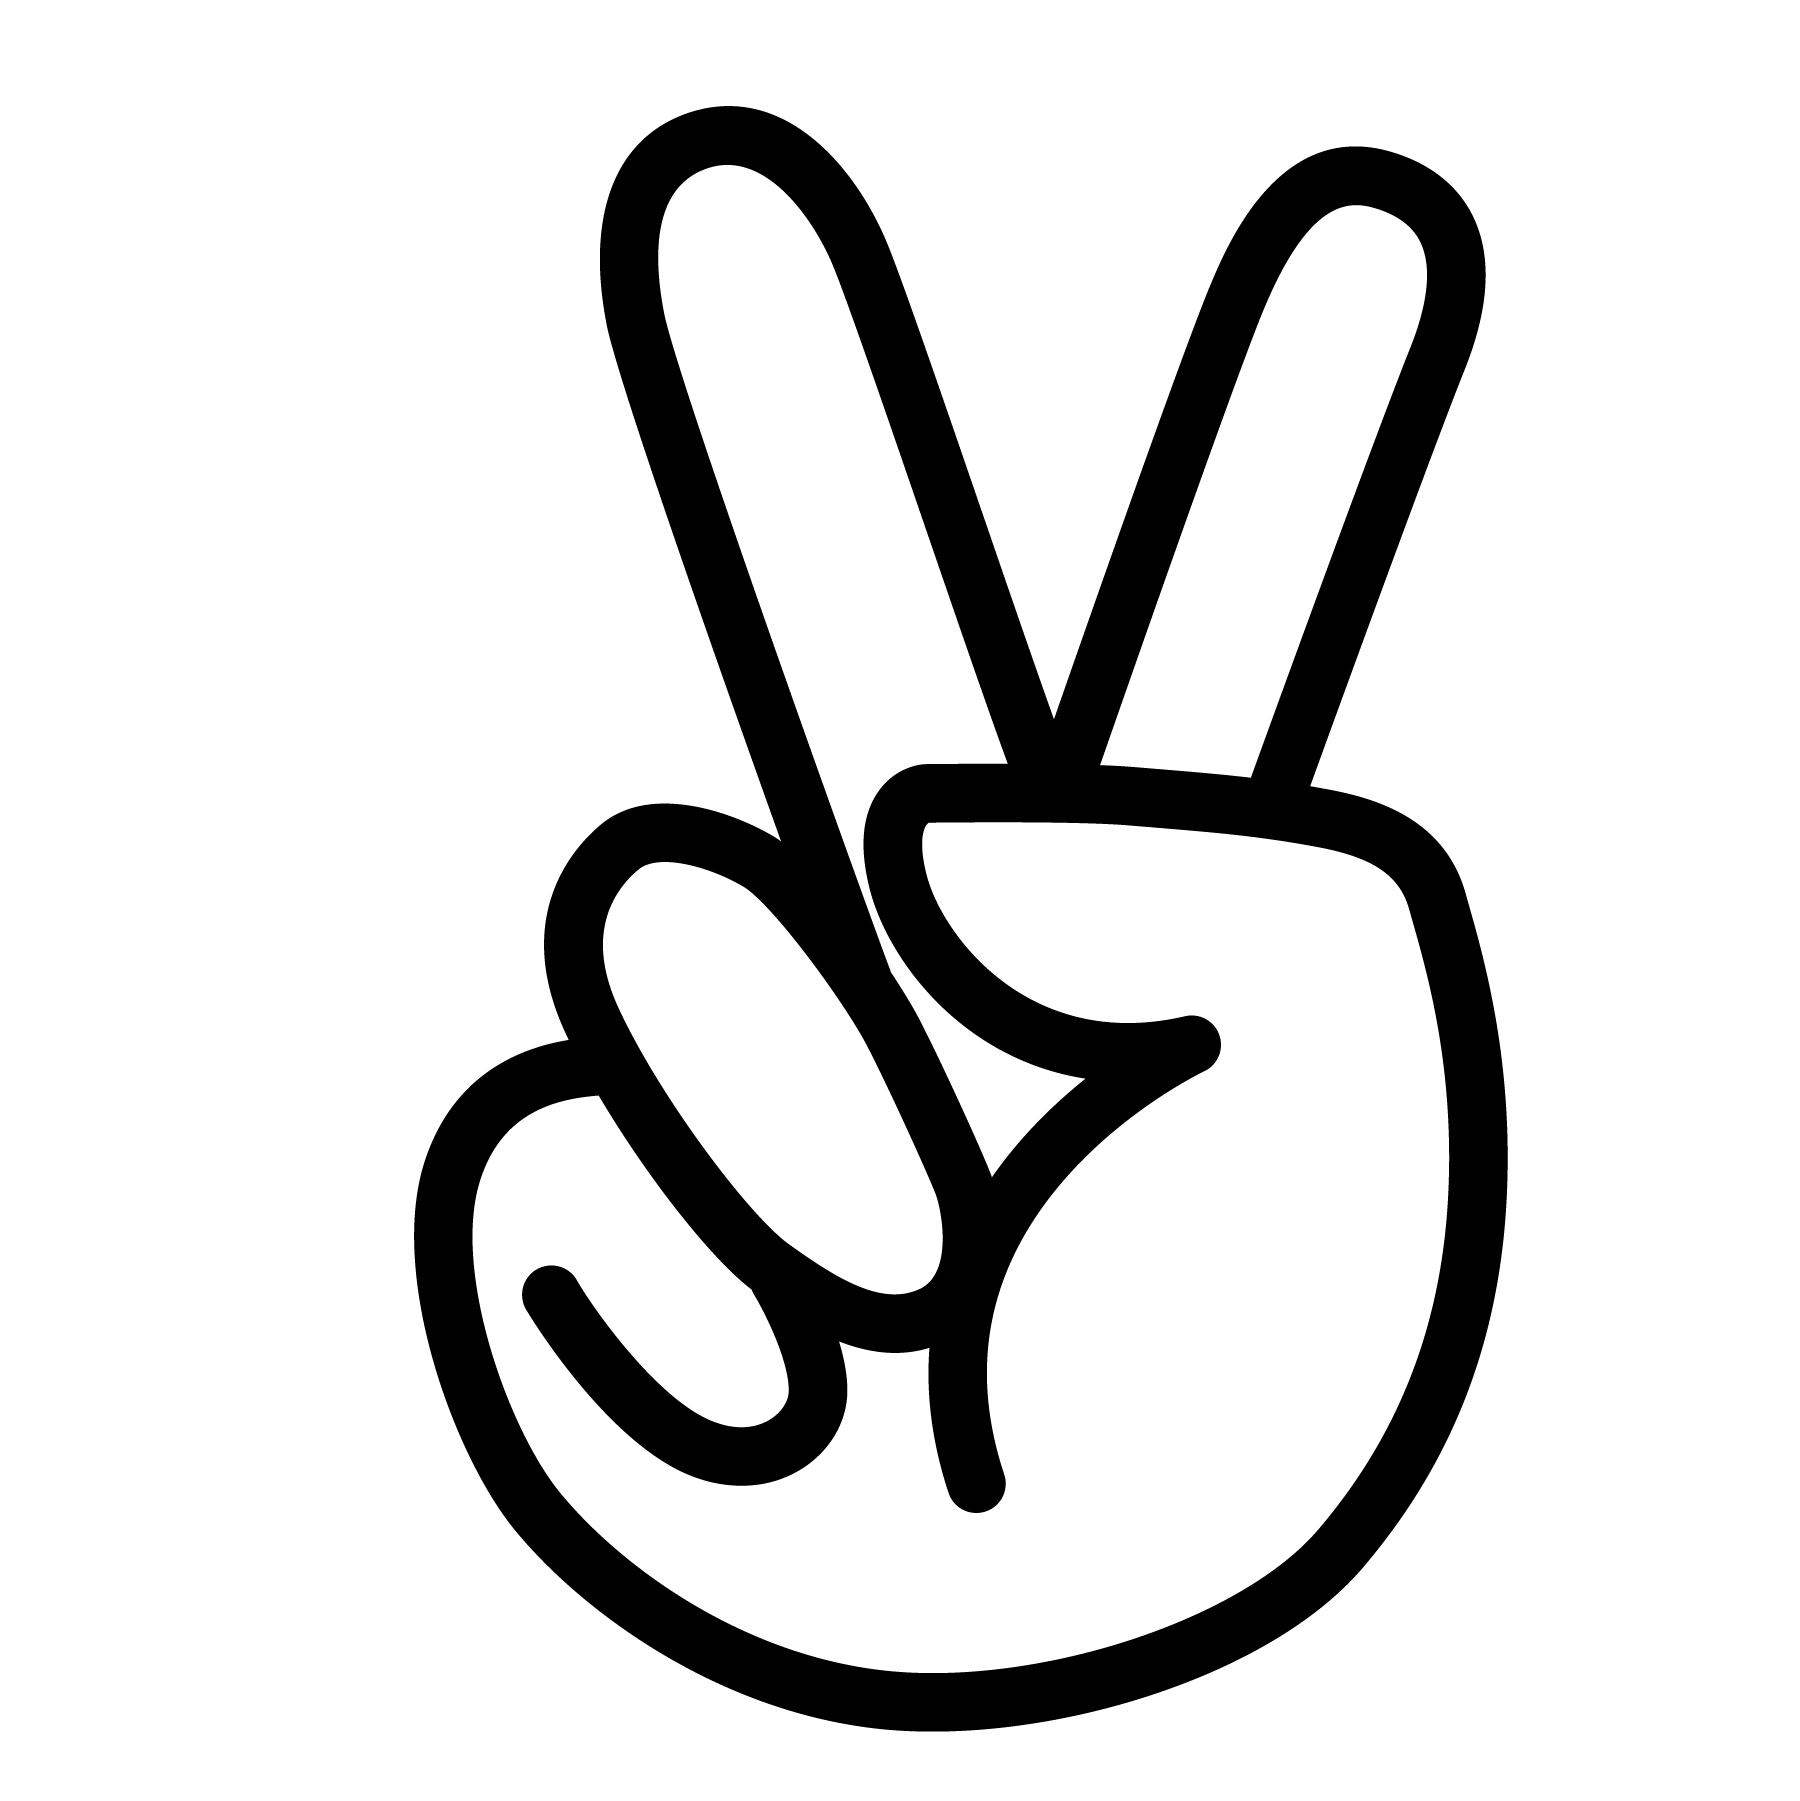 peace sign vector Download Free Vectors, Clipart